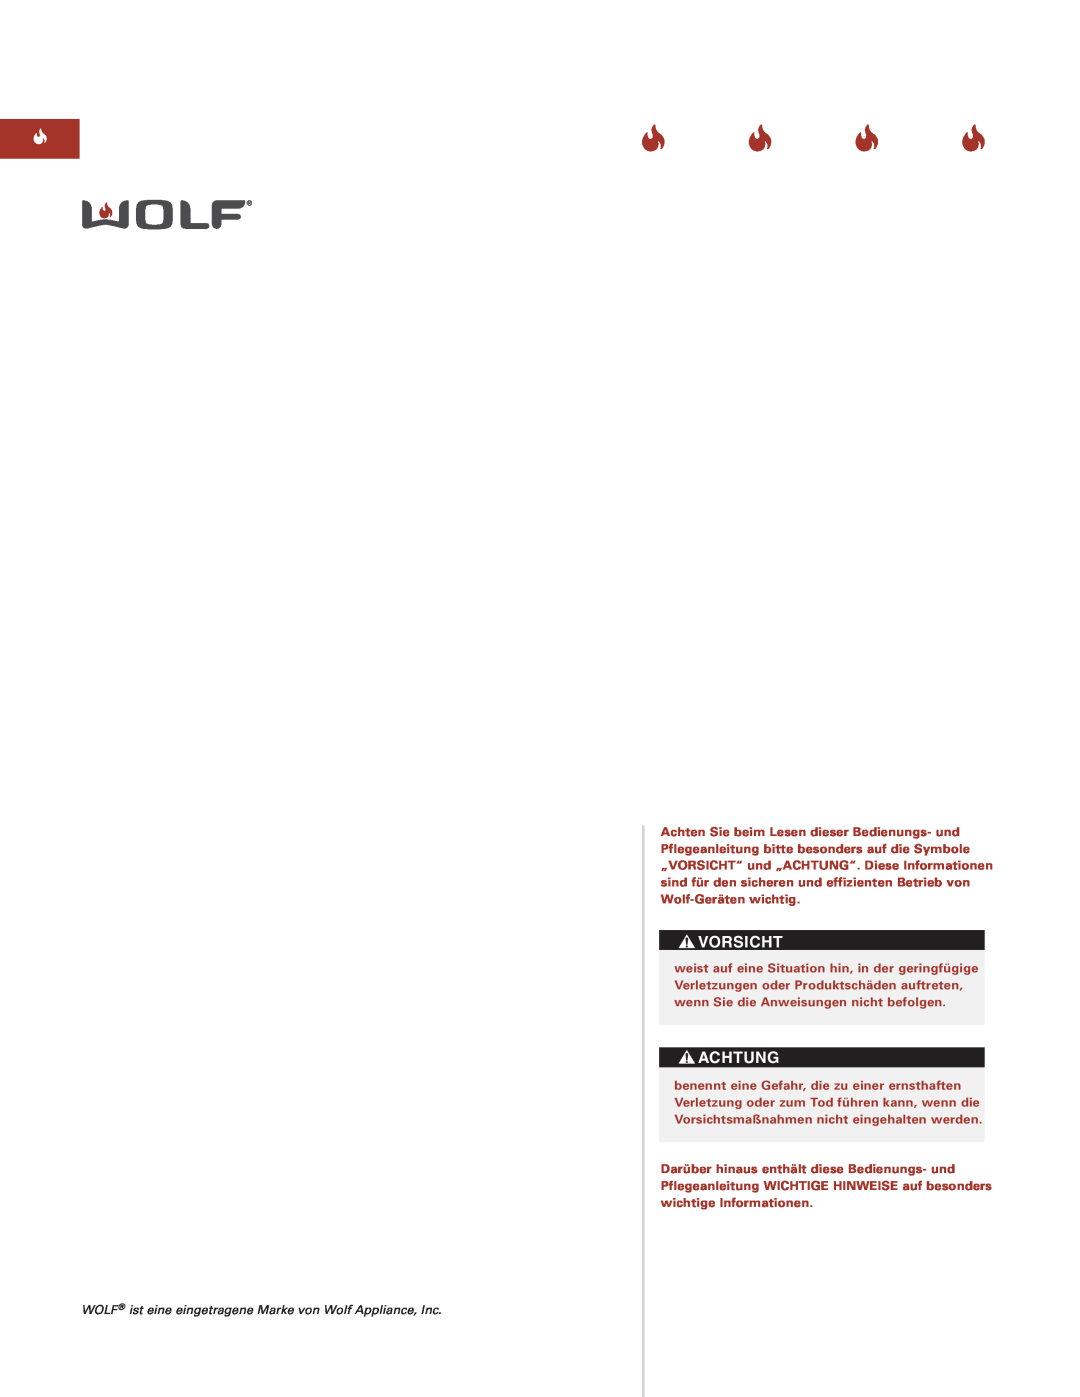 Sub-Zero Sealed Burner RangeTop manual Vorsicht, Achtung, WOLF ist eine eingetragene Marke von Wolf Appliance, Inc 